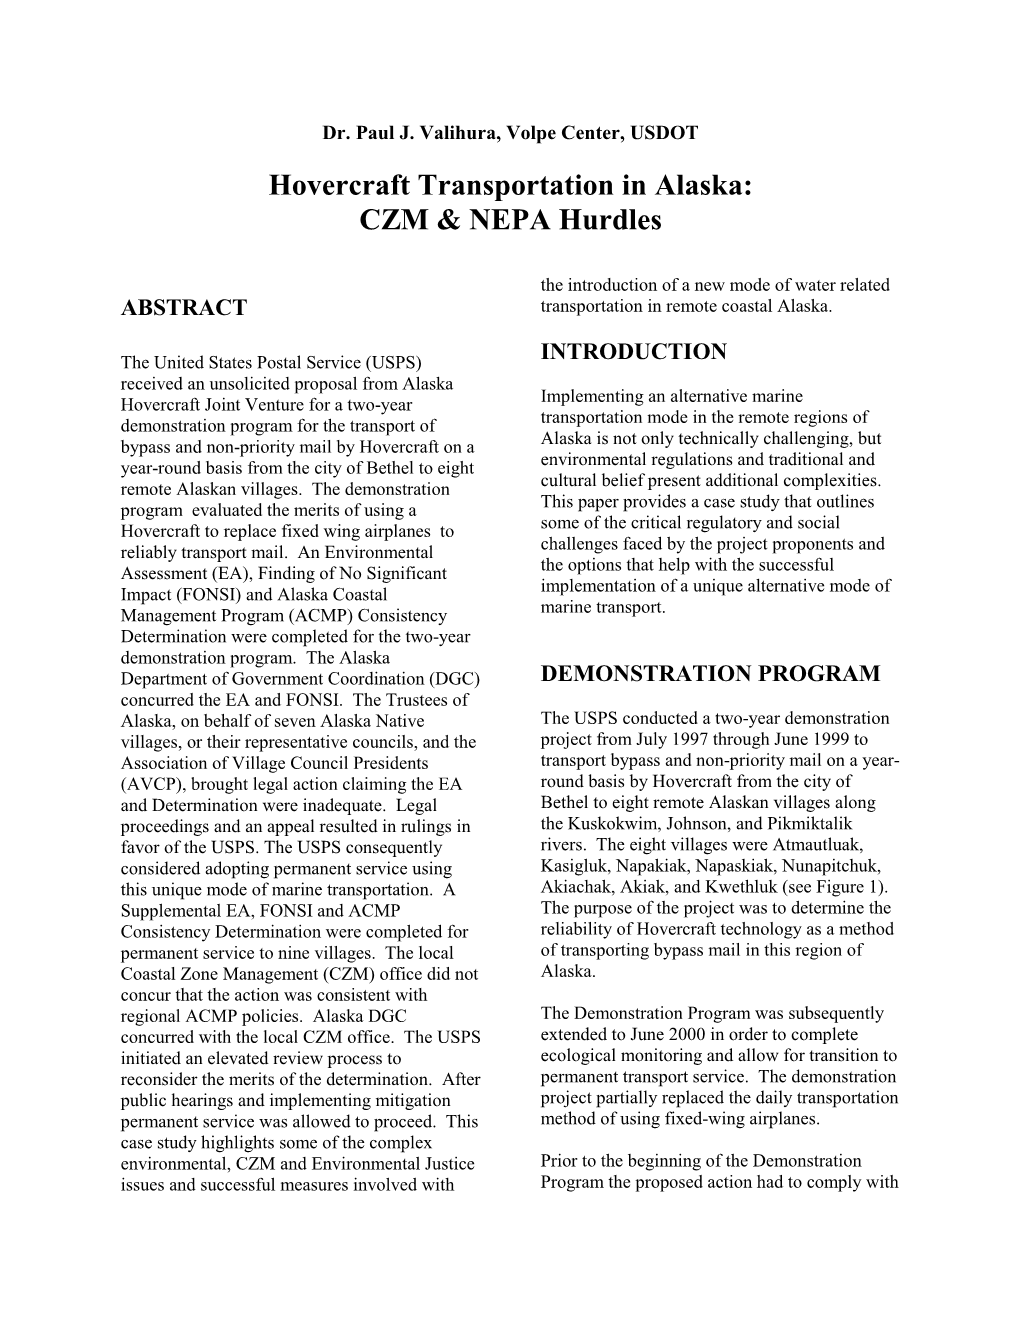 Hovercraft Transportation in Alaska: Czm & Nepa Hurdles